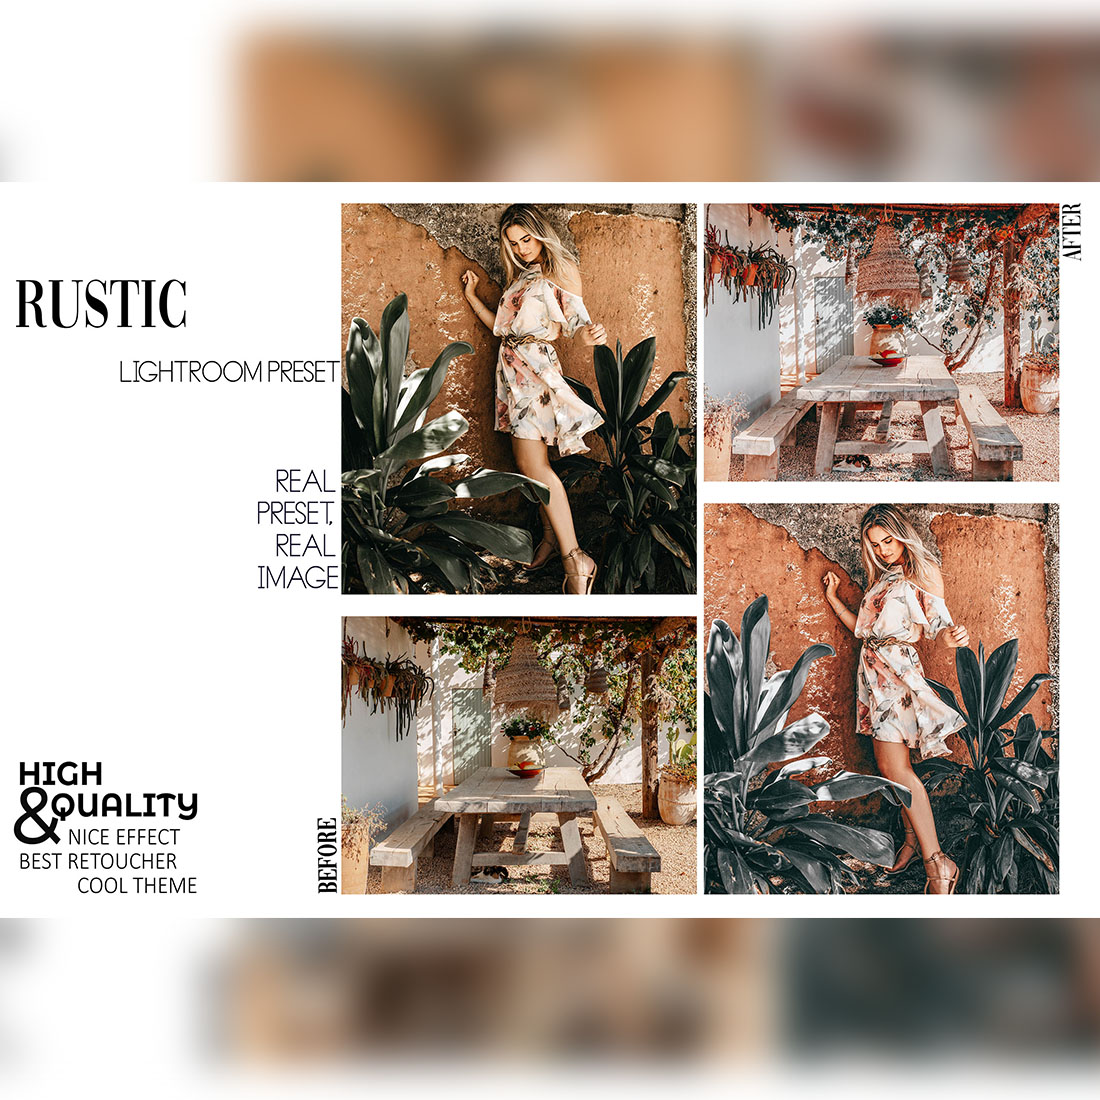 10 Full Of Life Lightroom Presets, Rustic Mobile Preset, Summer Girl Desktop, Lifestyle Portrait Theme Instagram LR Filter DNG Nature Boho preview image.